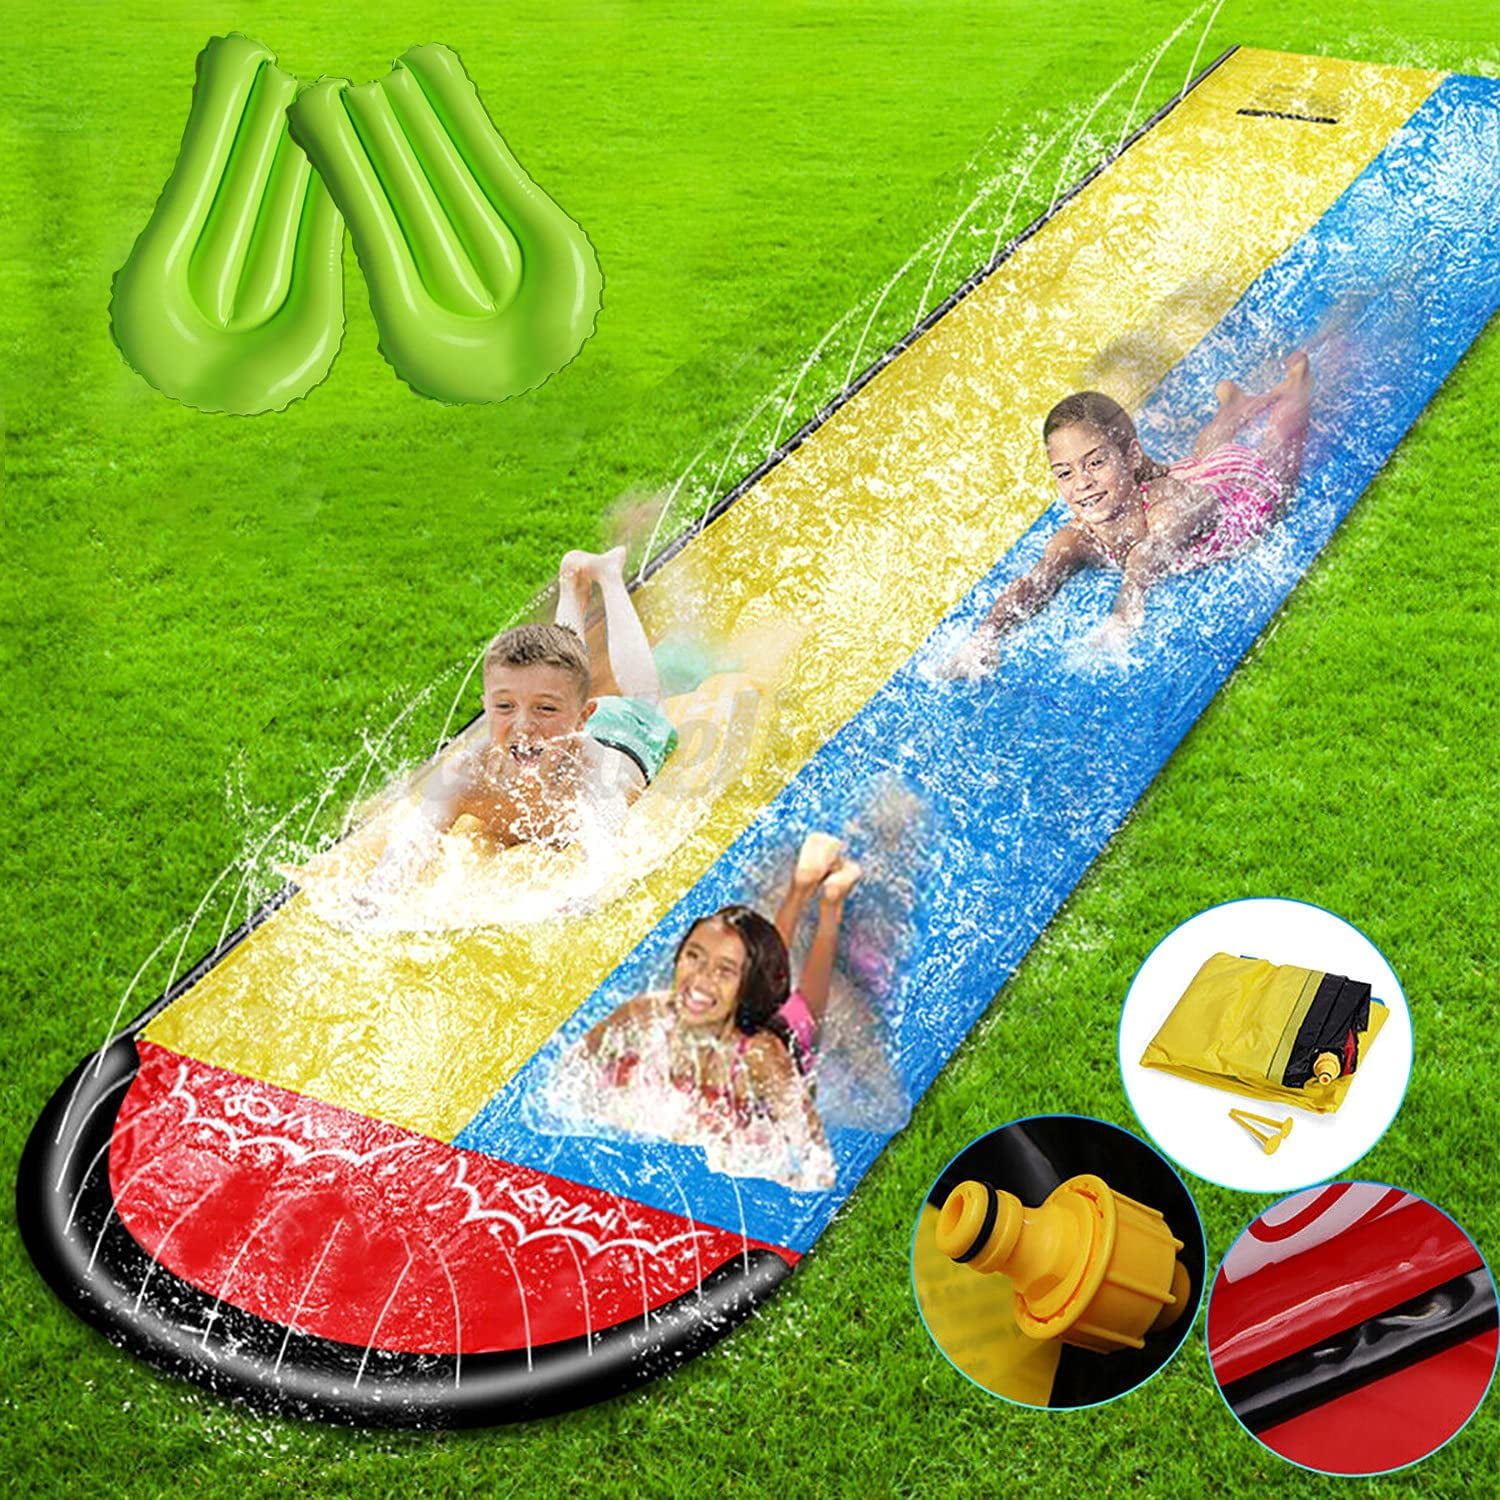 488cm 16ft Inflatable Bumper Waterslide Outdoor Garden Game Kids Childrens Slip 